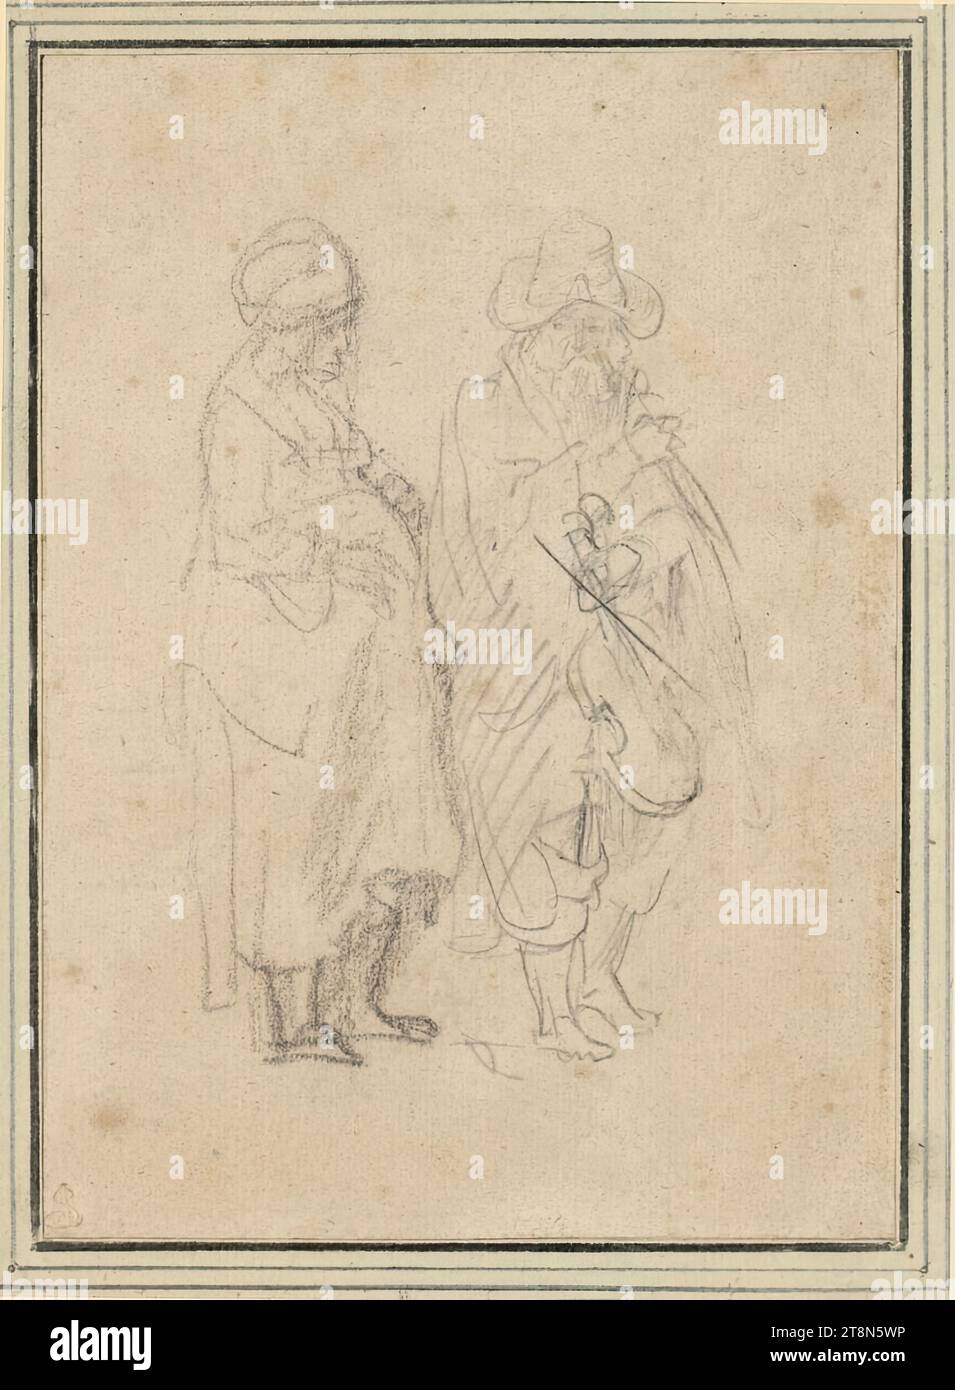 Debout femme enceinte et homme avec violon, anonyme, vers 1650, dessin, craie noire, 16,4 x 11,8 cm, l. l. Duc Albert de Saxe-Teschen Banque D'Images